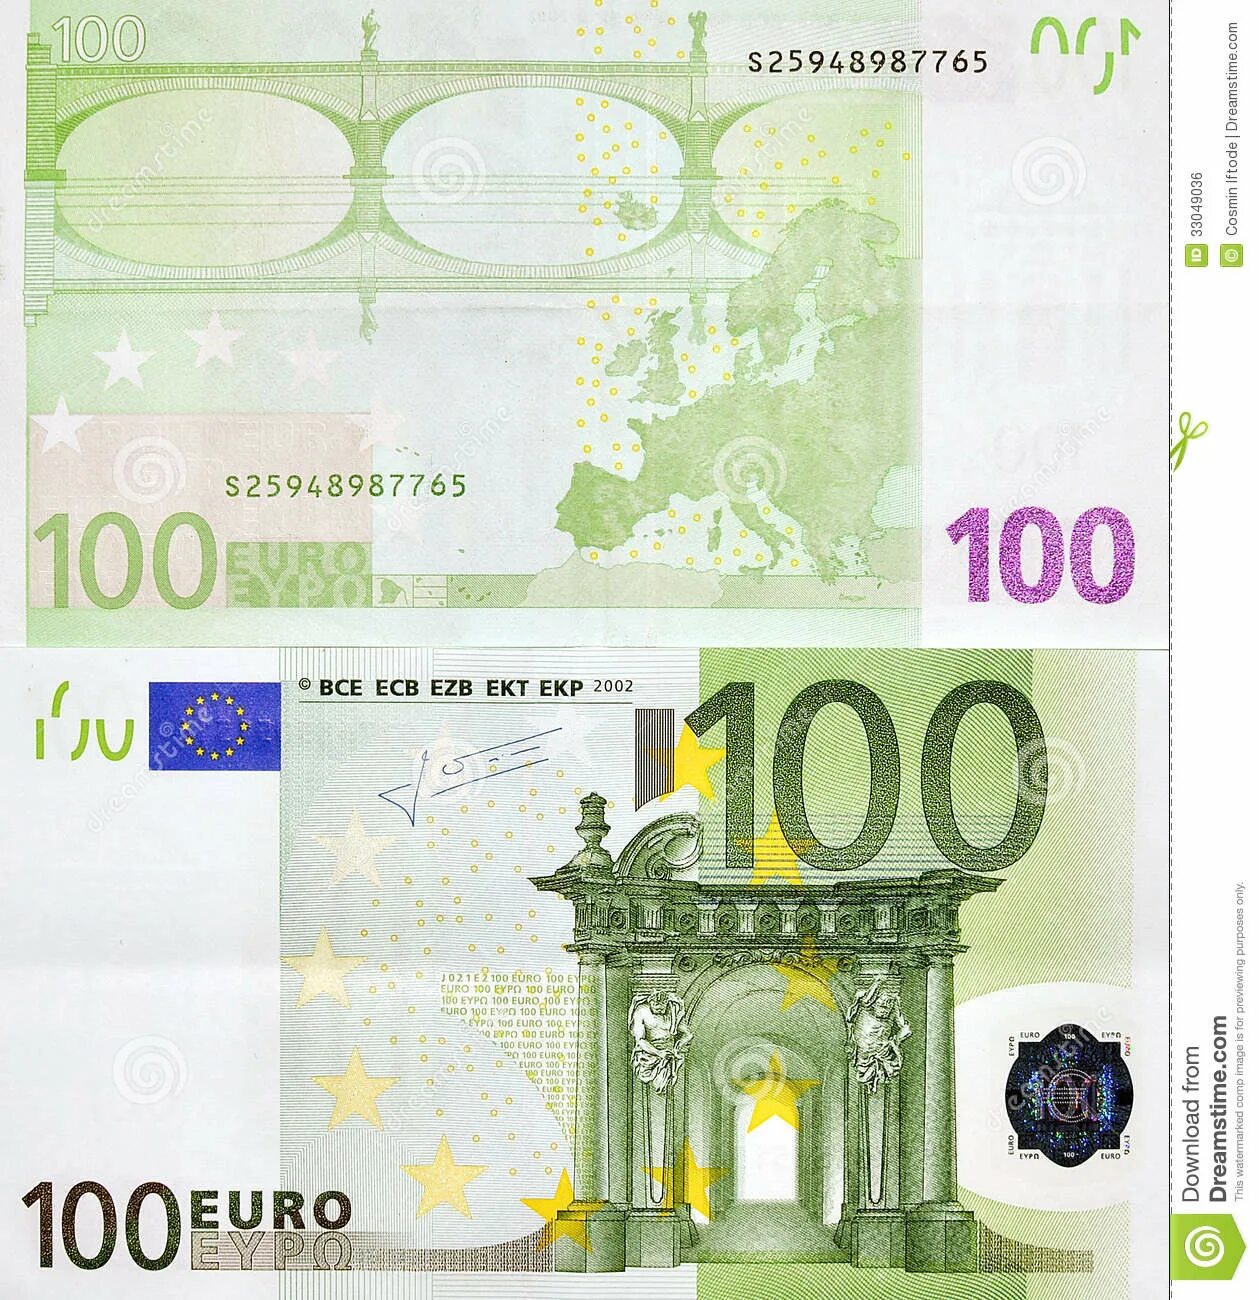 Размеры купюры 100. 100 Евро купюра. Изображение 100 евро купюры. Как выглядит 100 евро. СТО евро банкноты евро.